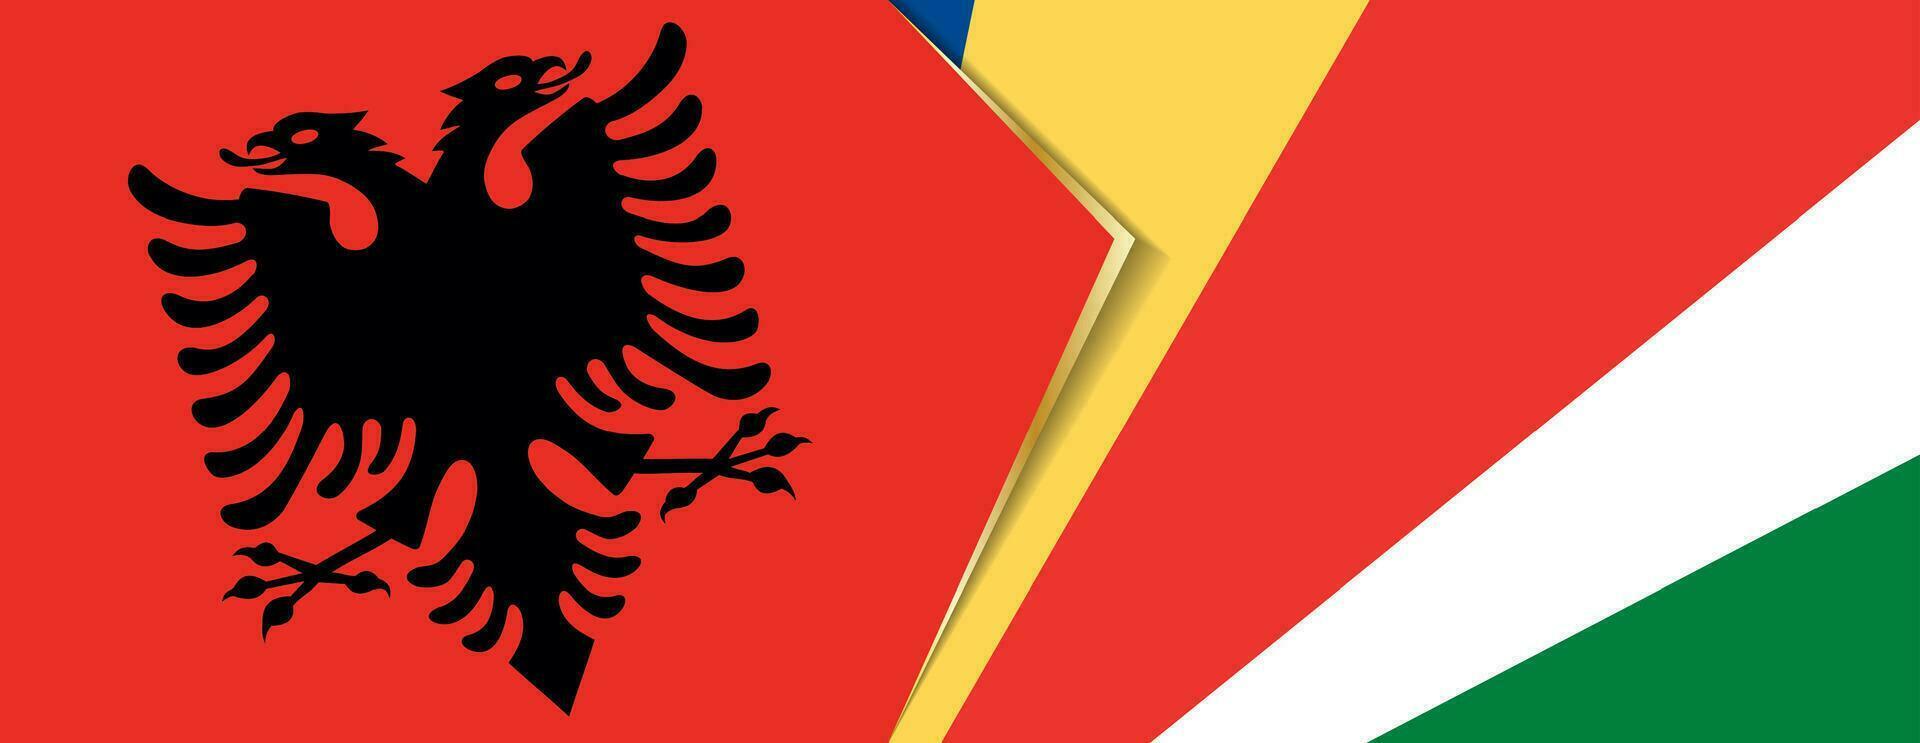 Albanië en Seychellen vlaggen, twee vector vlaggen.